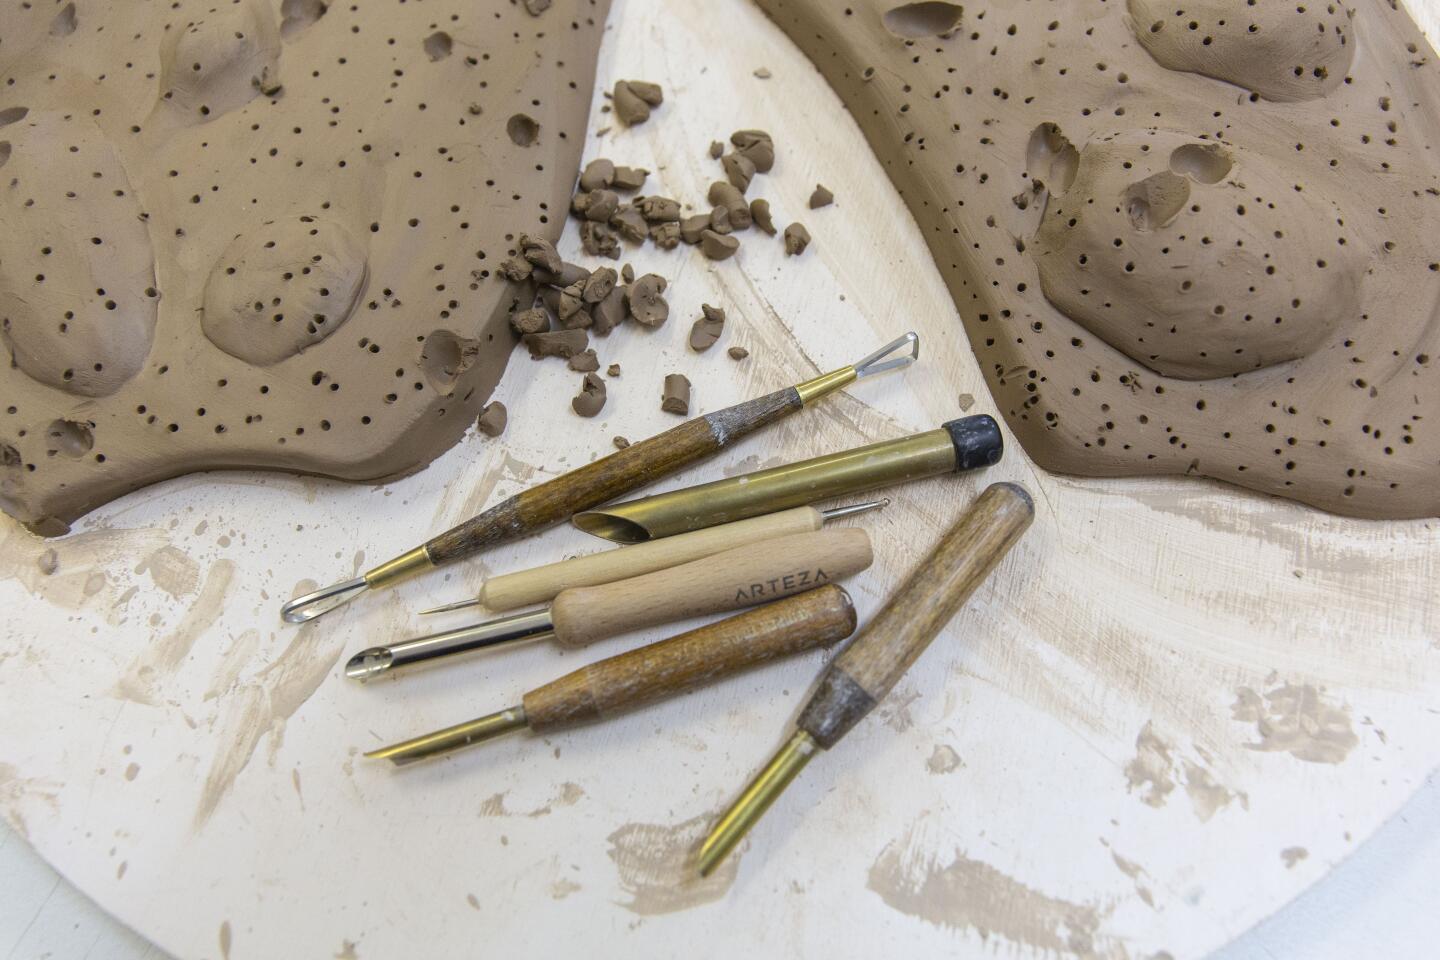 A ceramicist's tools